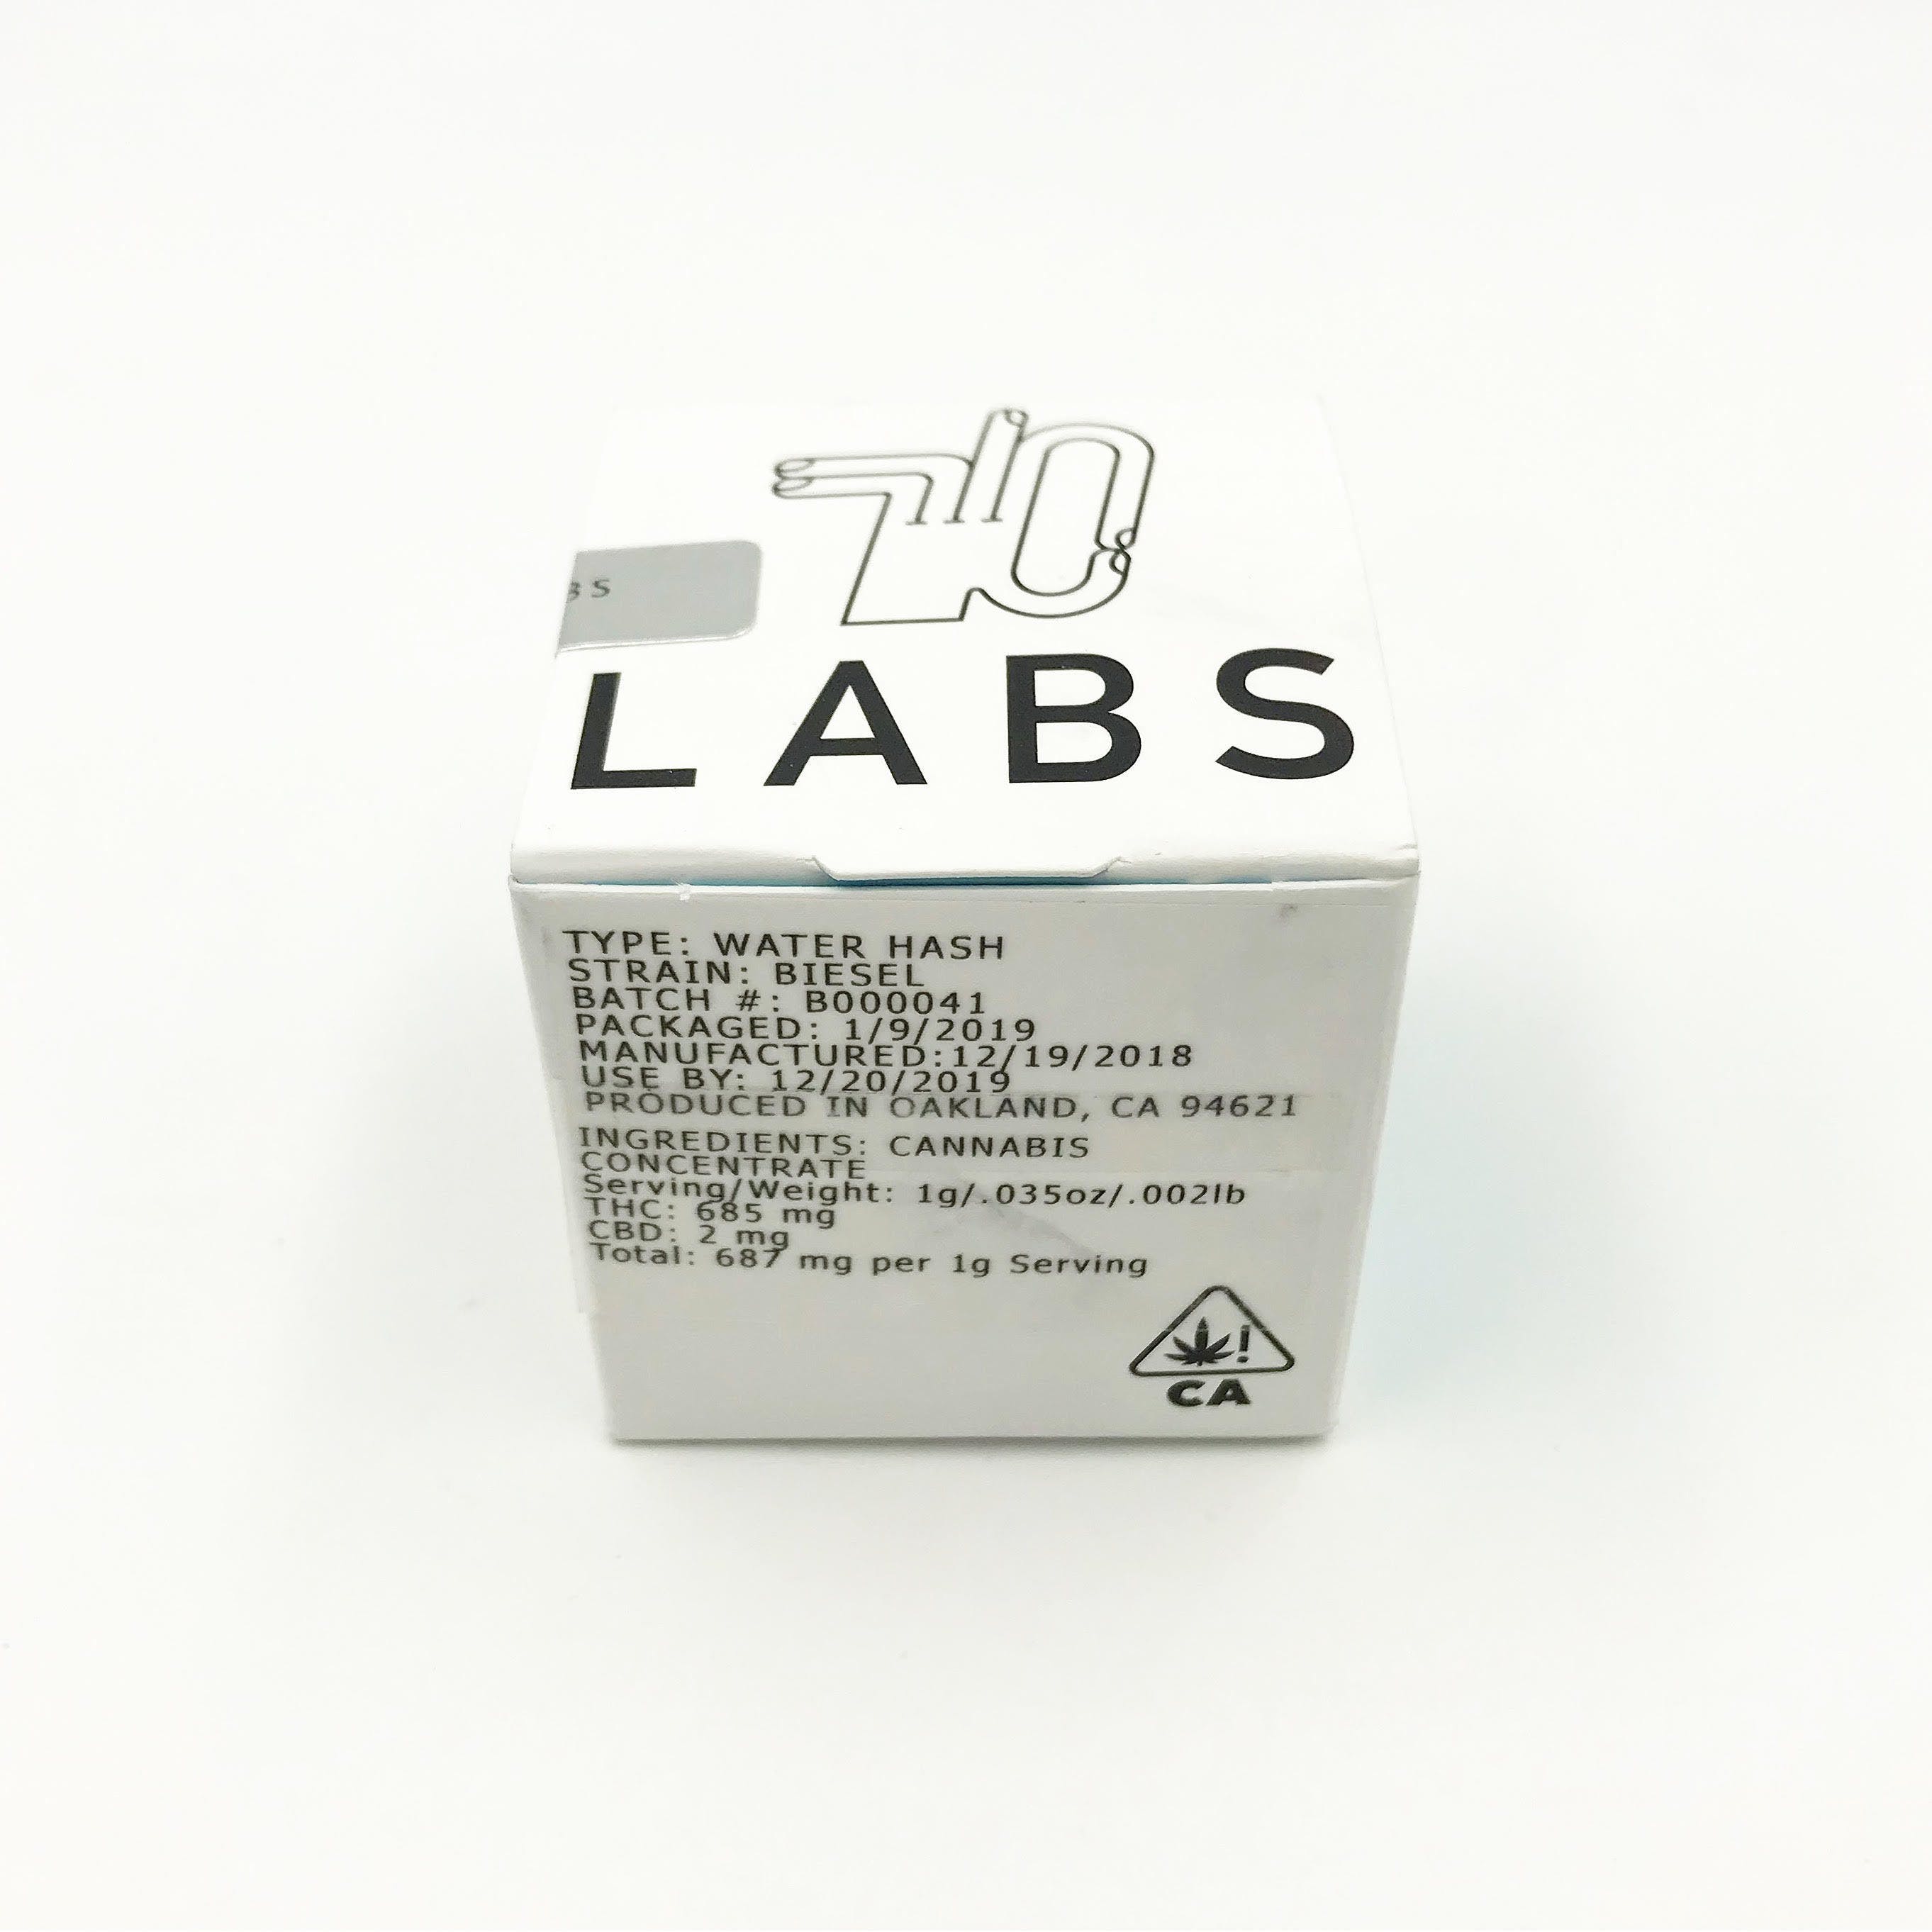 710 Labs - Biesel 90U Water Hash